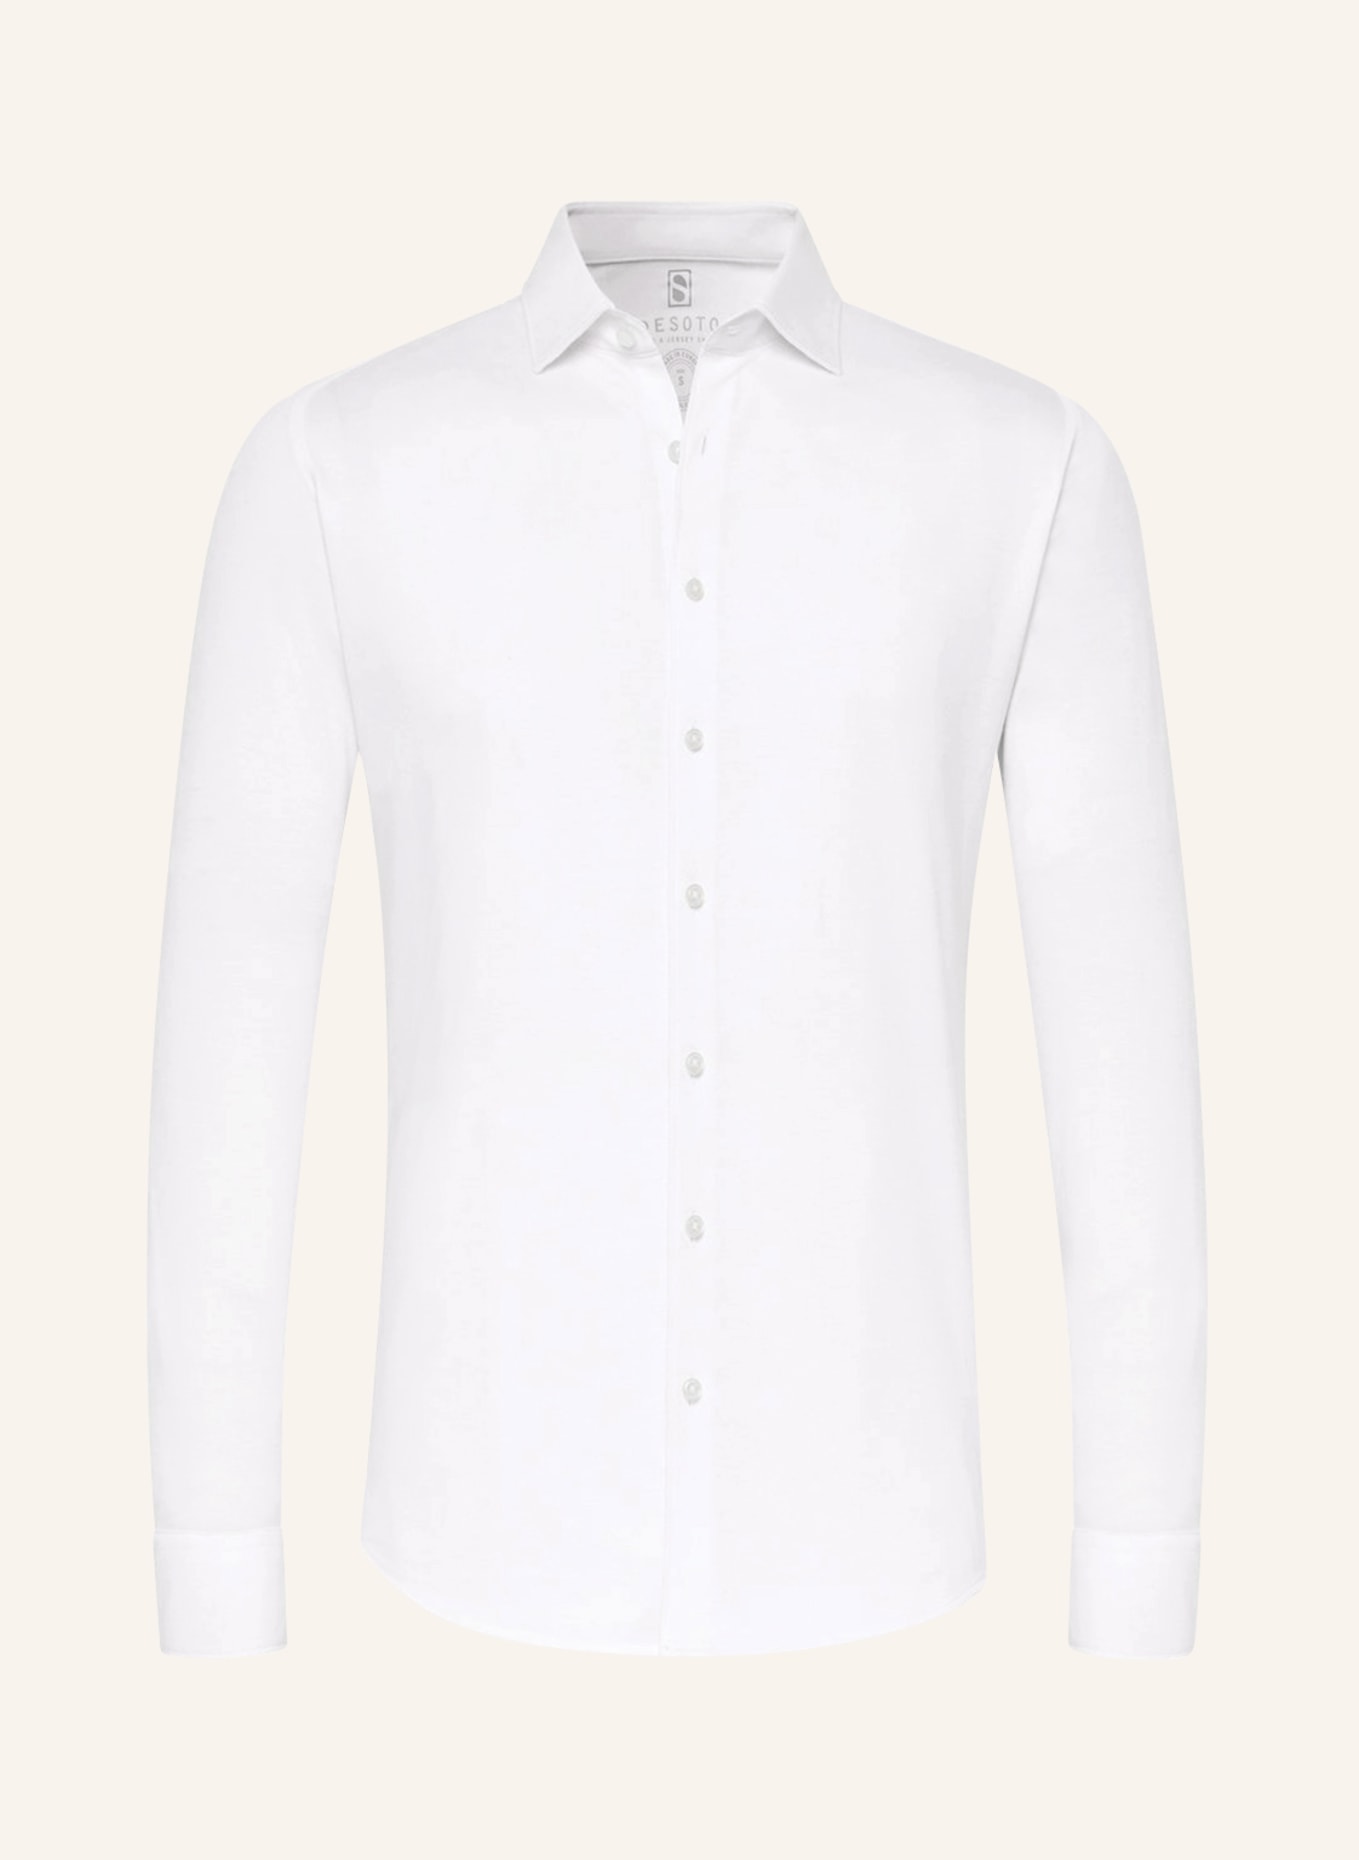 DESOTO Jerseyhemd Slim Fit, Farbe: WEISS (Bild 1)